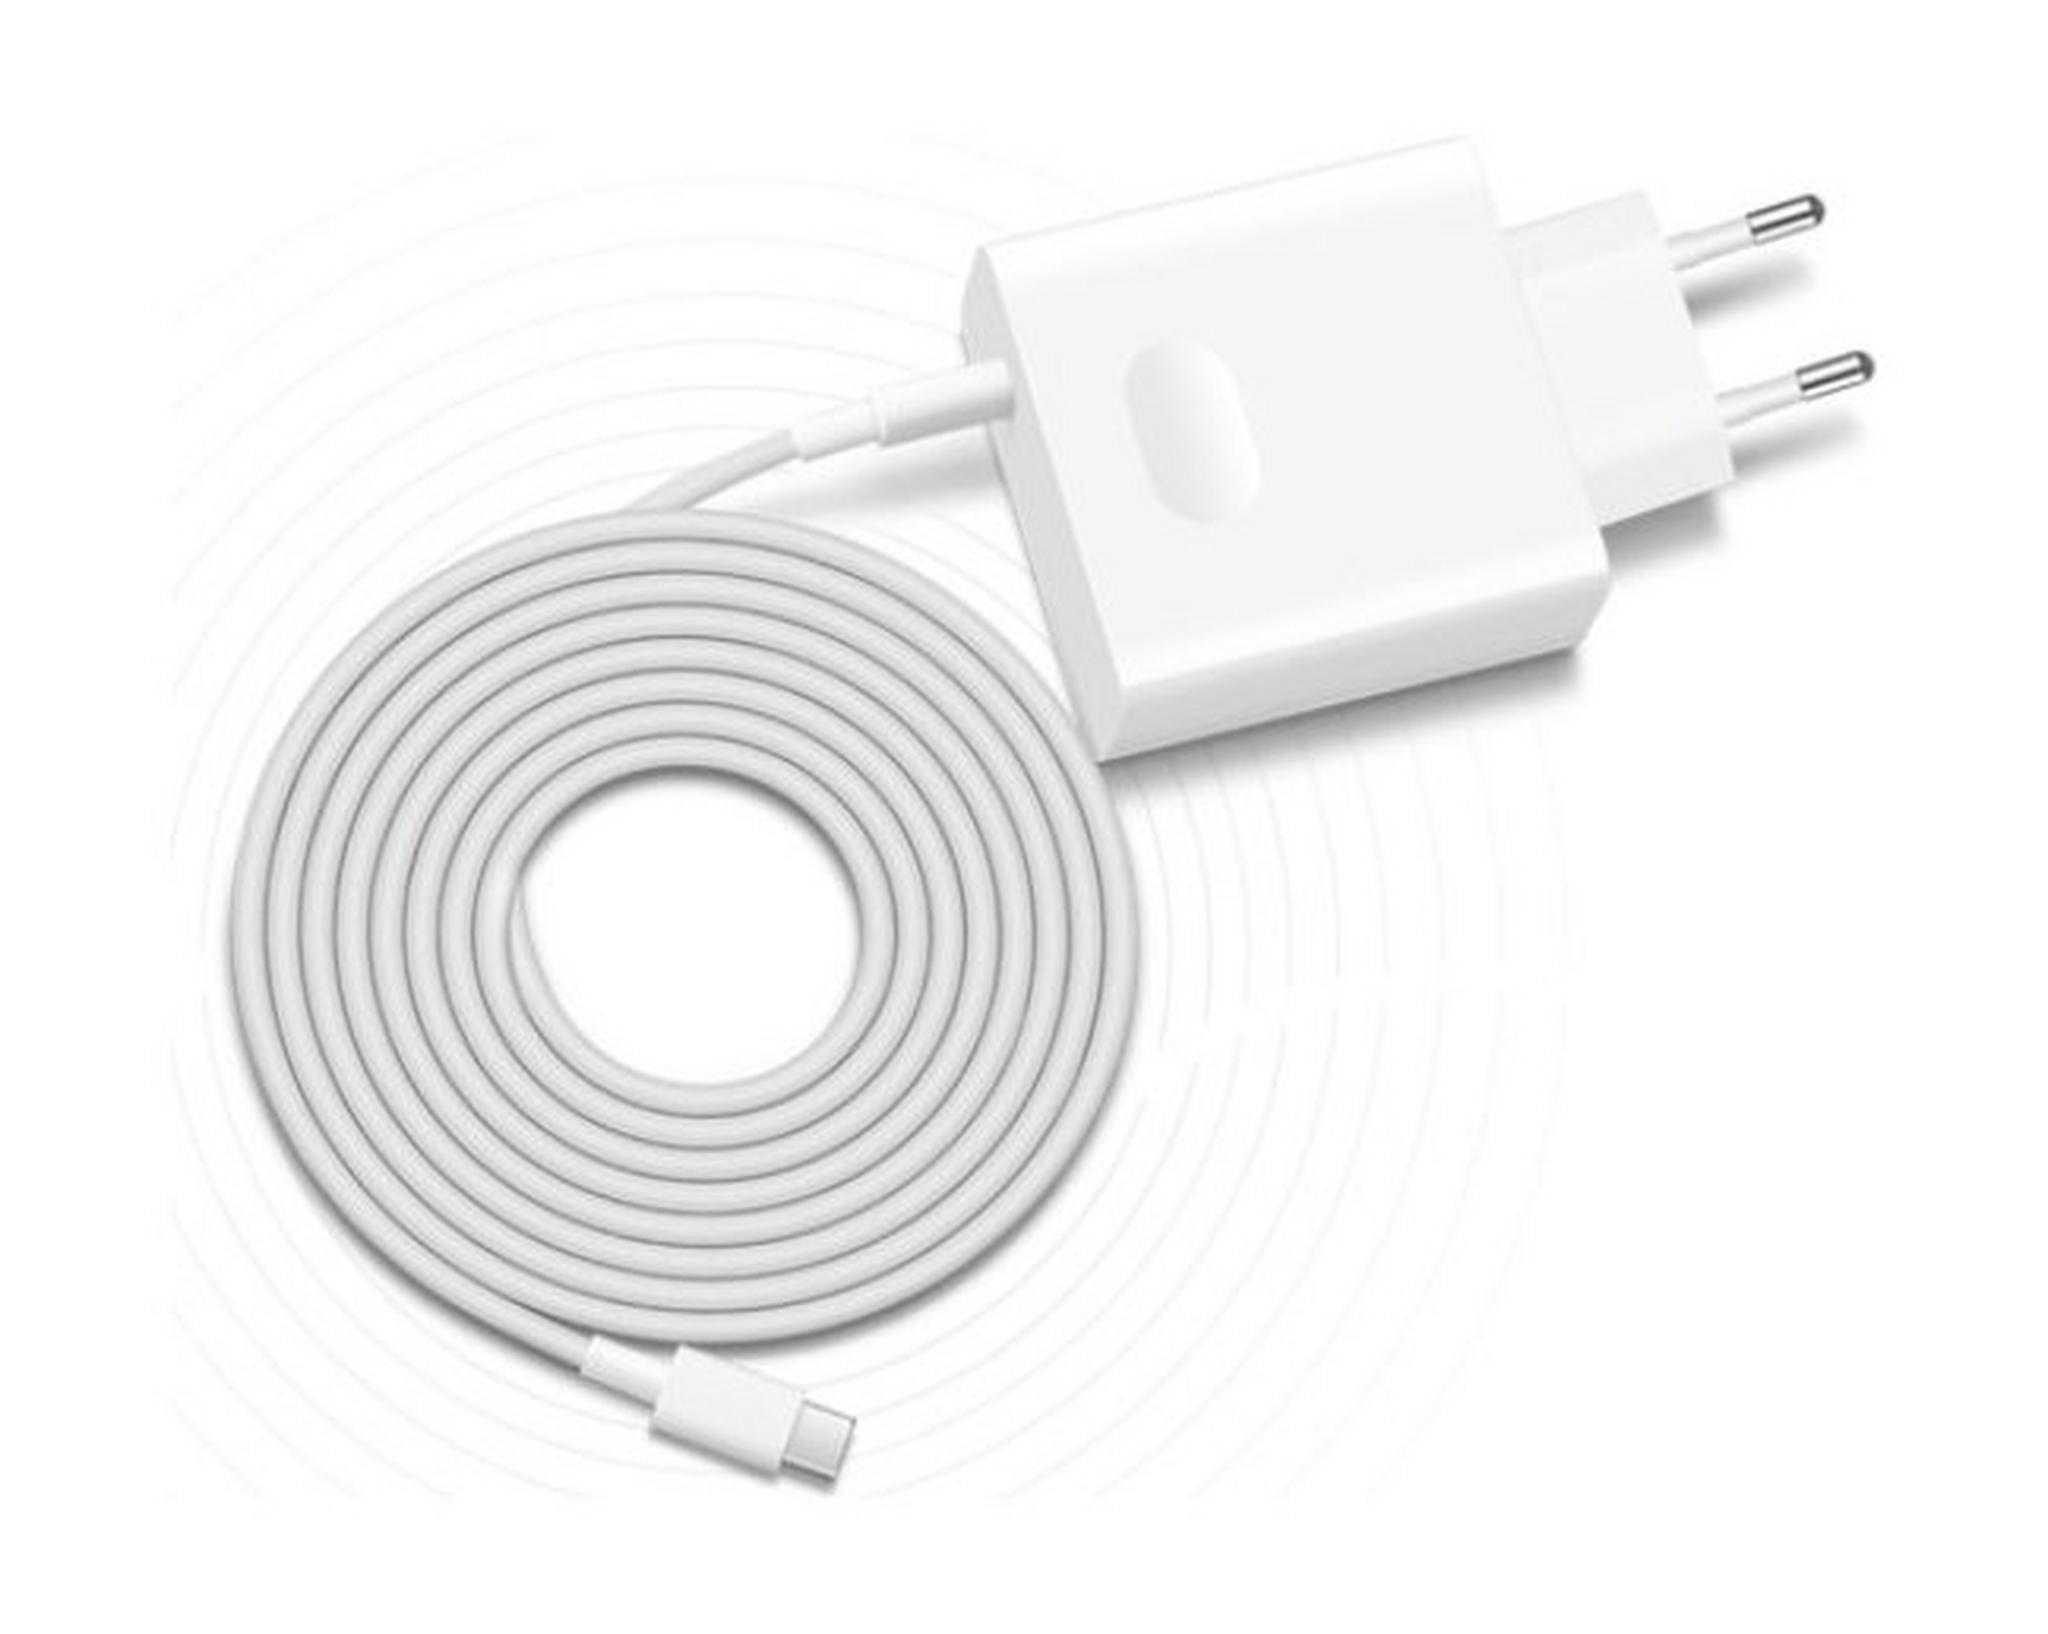 شاحن هواوي USB-C سريع (55030274) - أبيض